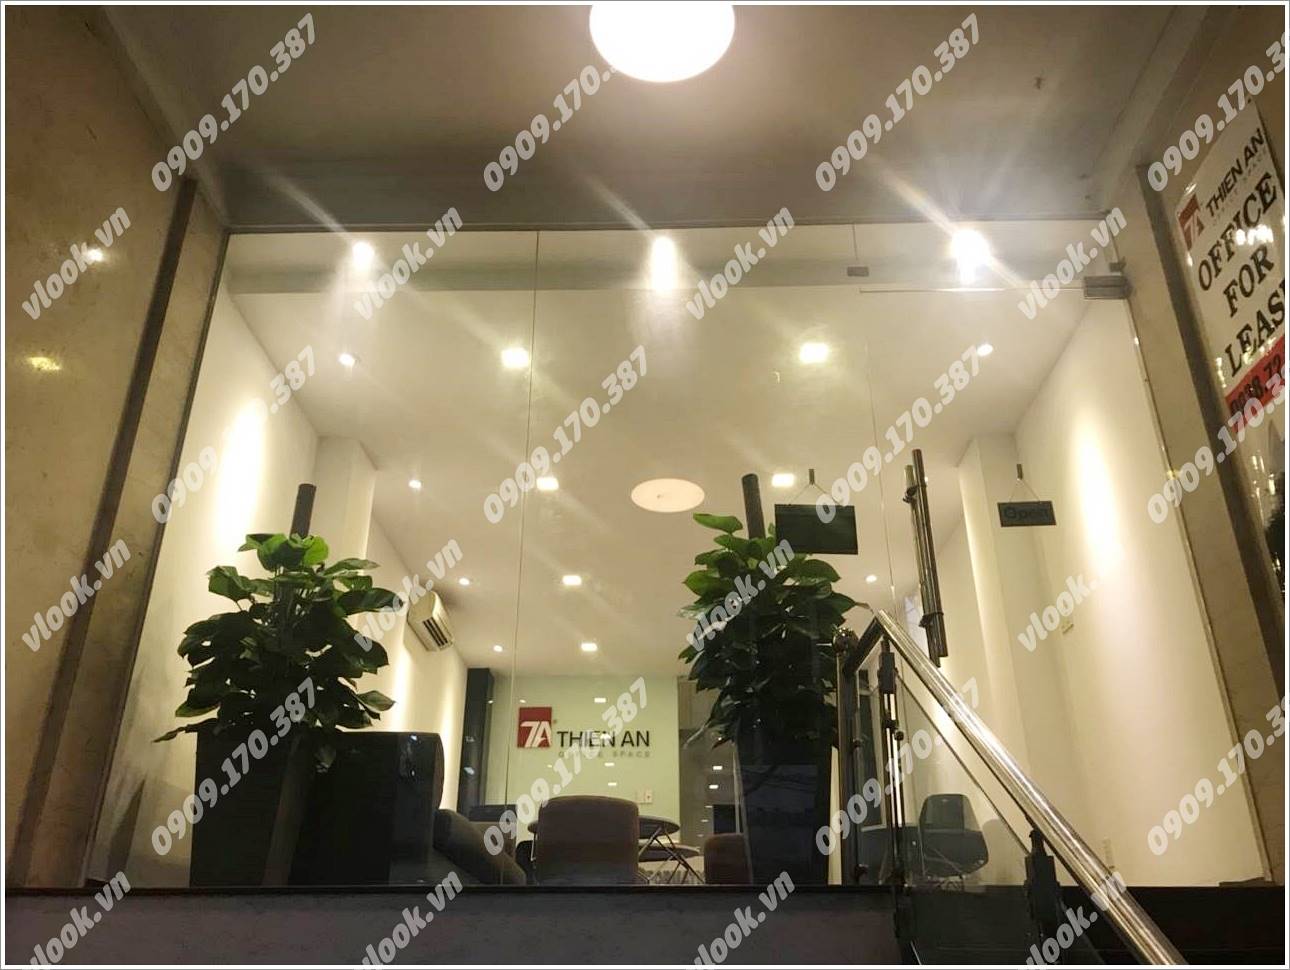 Cao ốc cho thuê văn phòng Thiên An Office, Tôn Thất Đạm, Quận 1, TPHCM - vlook.vn